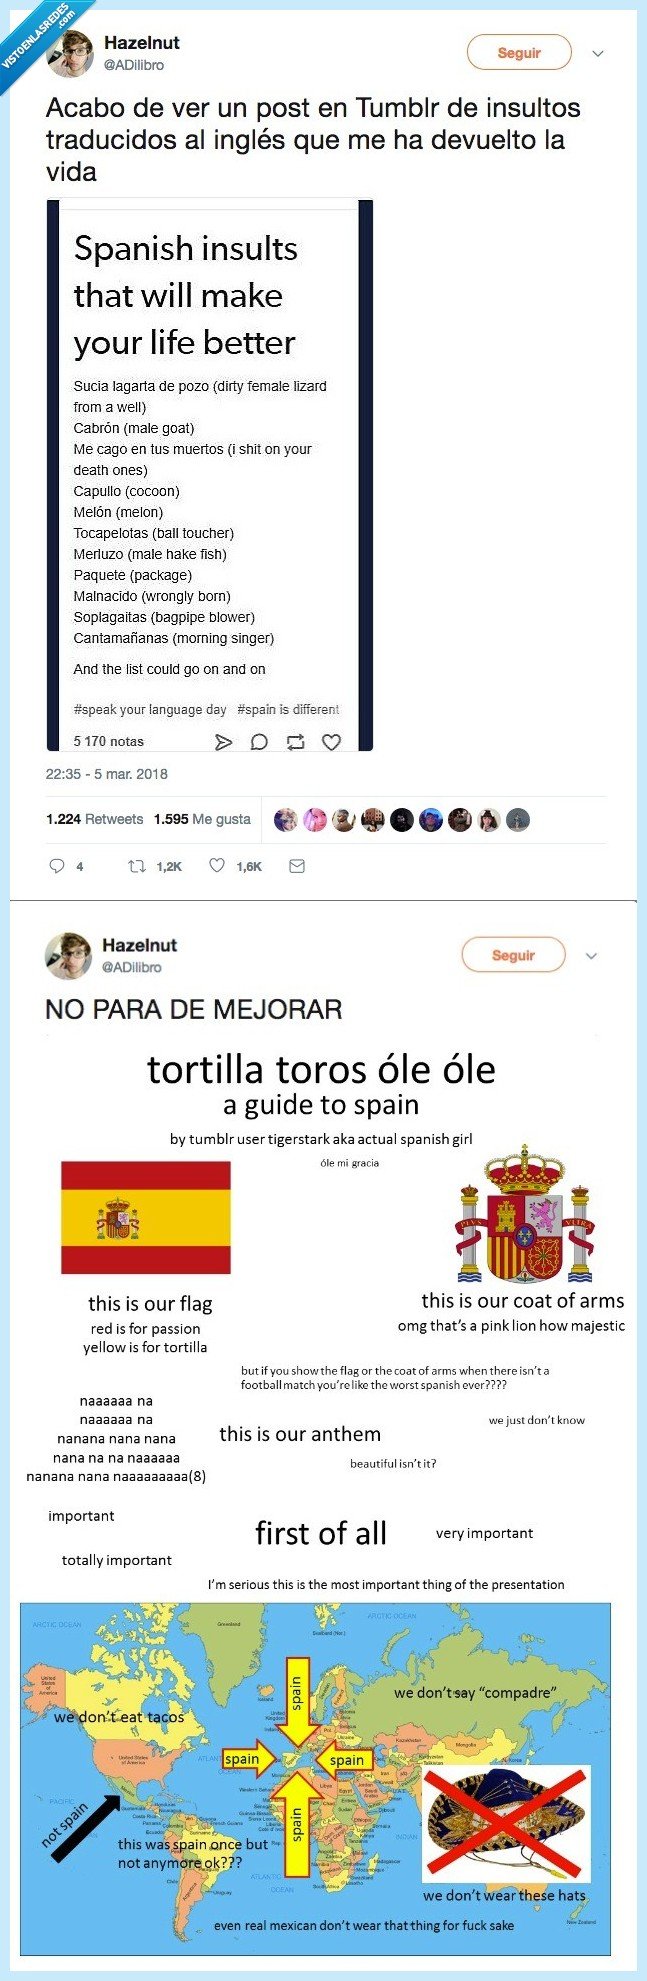 484092 - Los insultos en español se vuelven ridículos si los traducimos, por @ADilibro